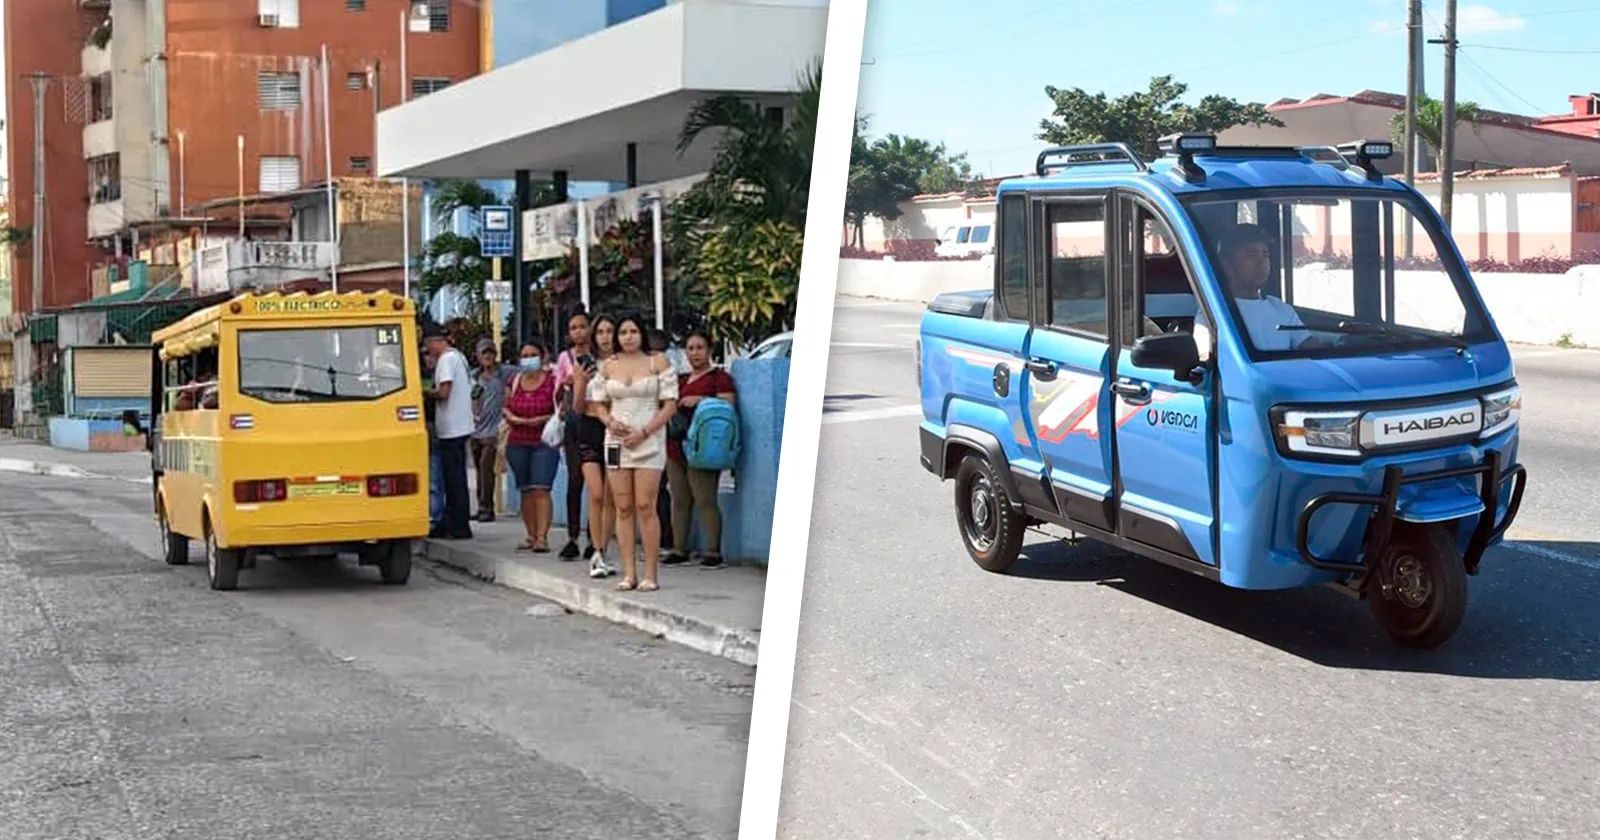 Transporte Eléctrico en Cuba: ¿Realidad o Utopía?